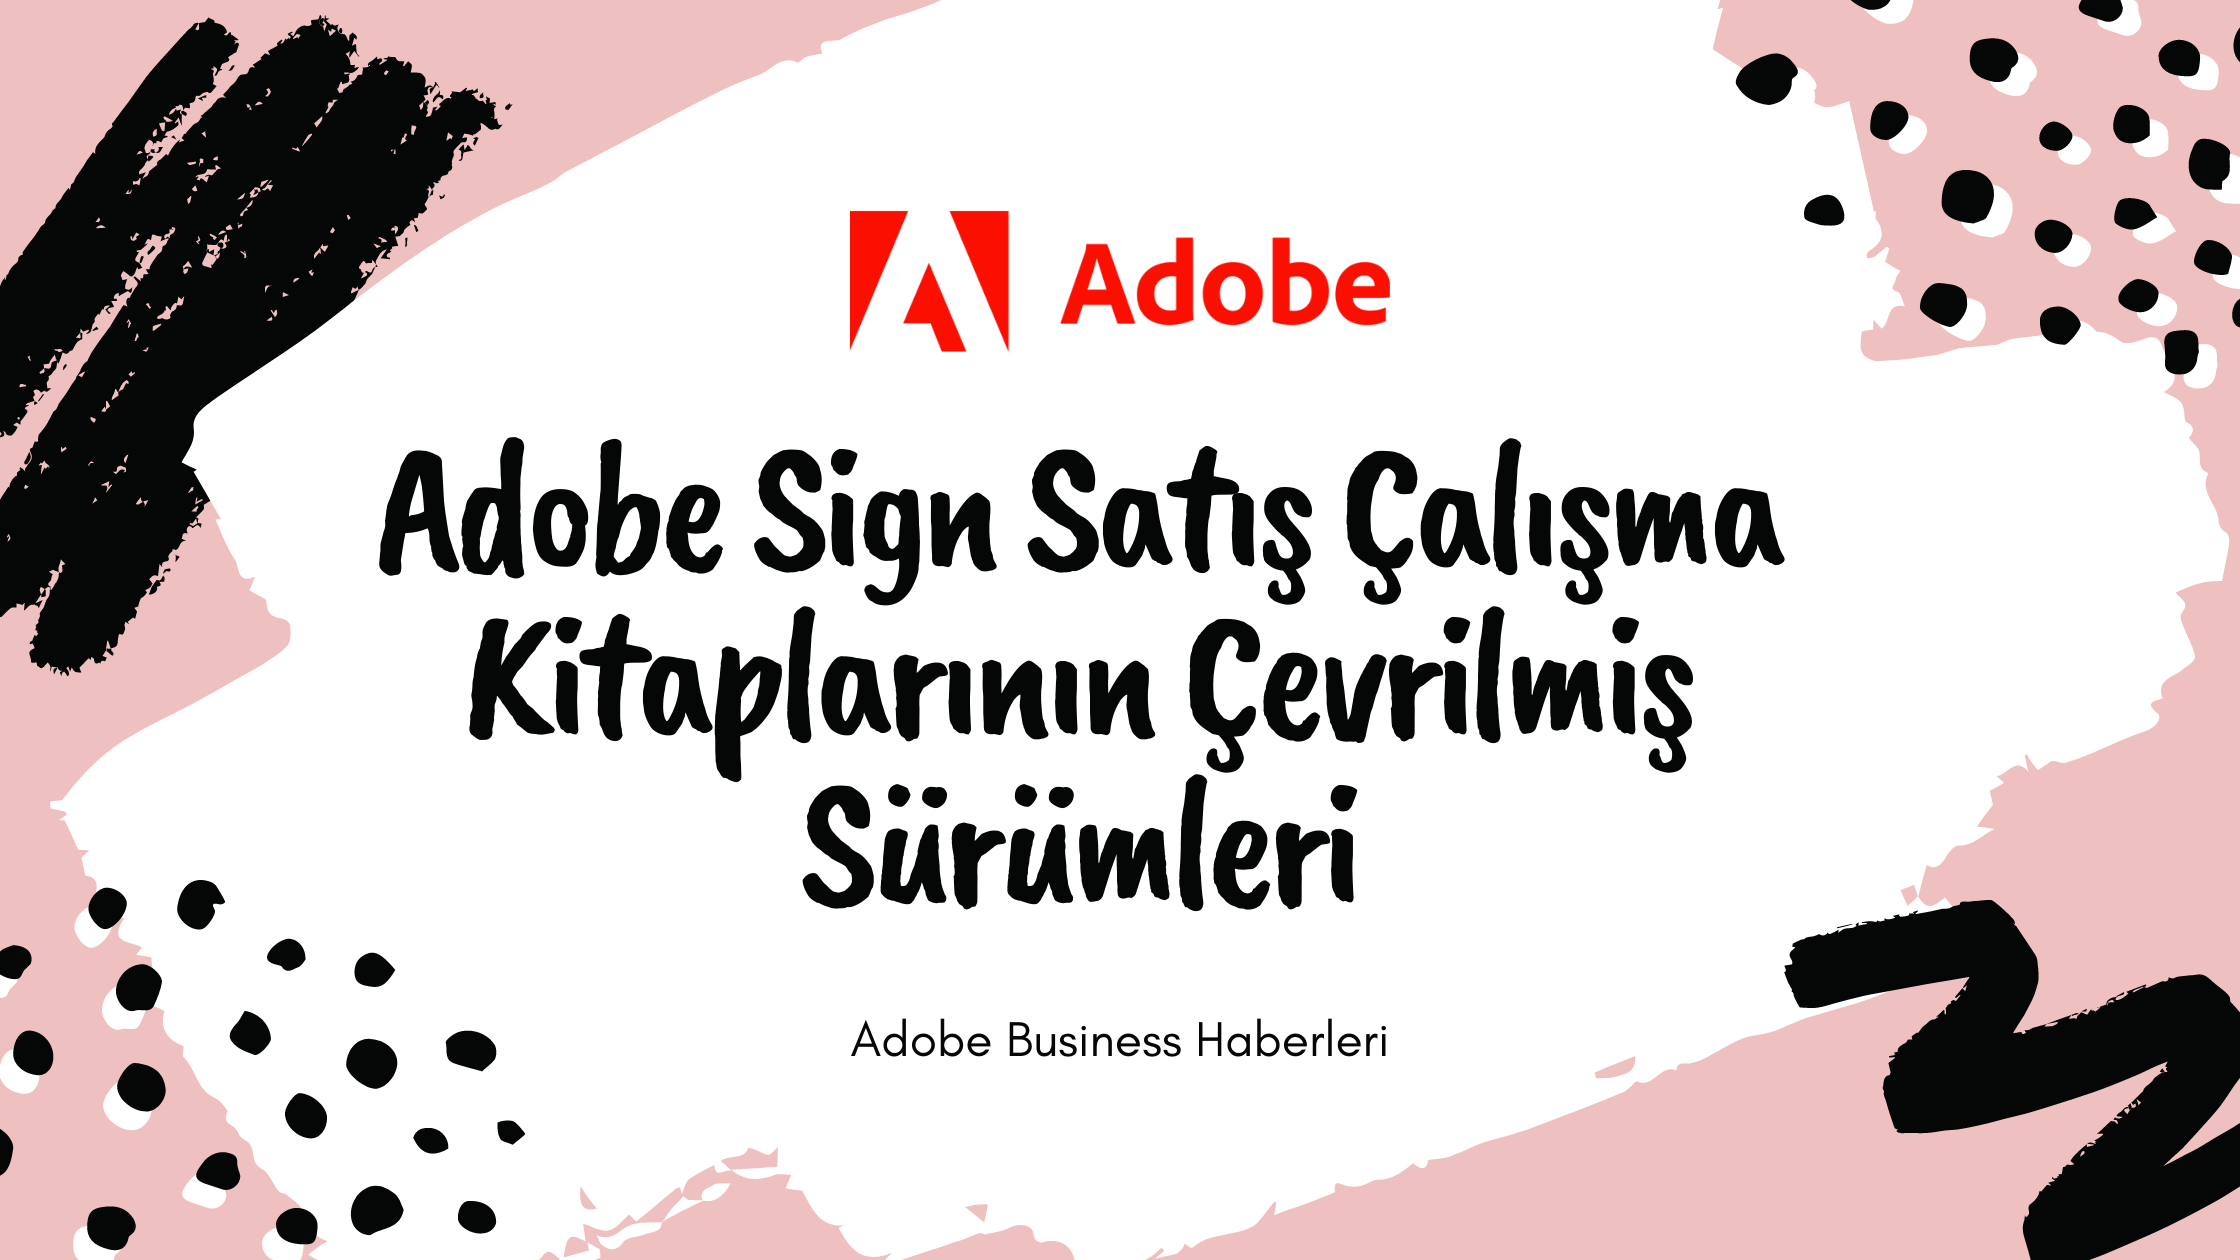 Adobe Sign Satış Kitaplarının Çevrilmiş Sürümleri